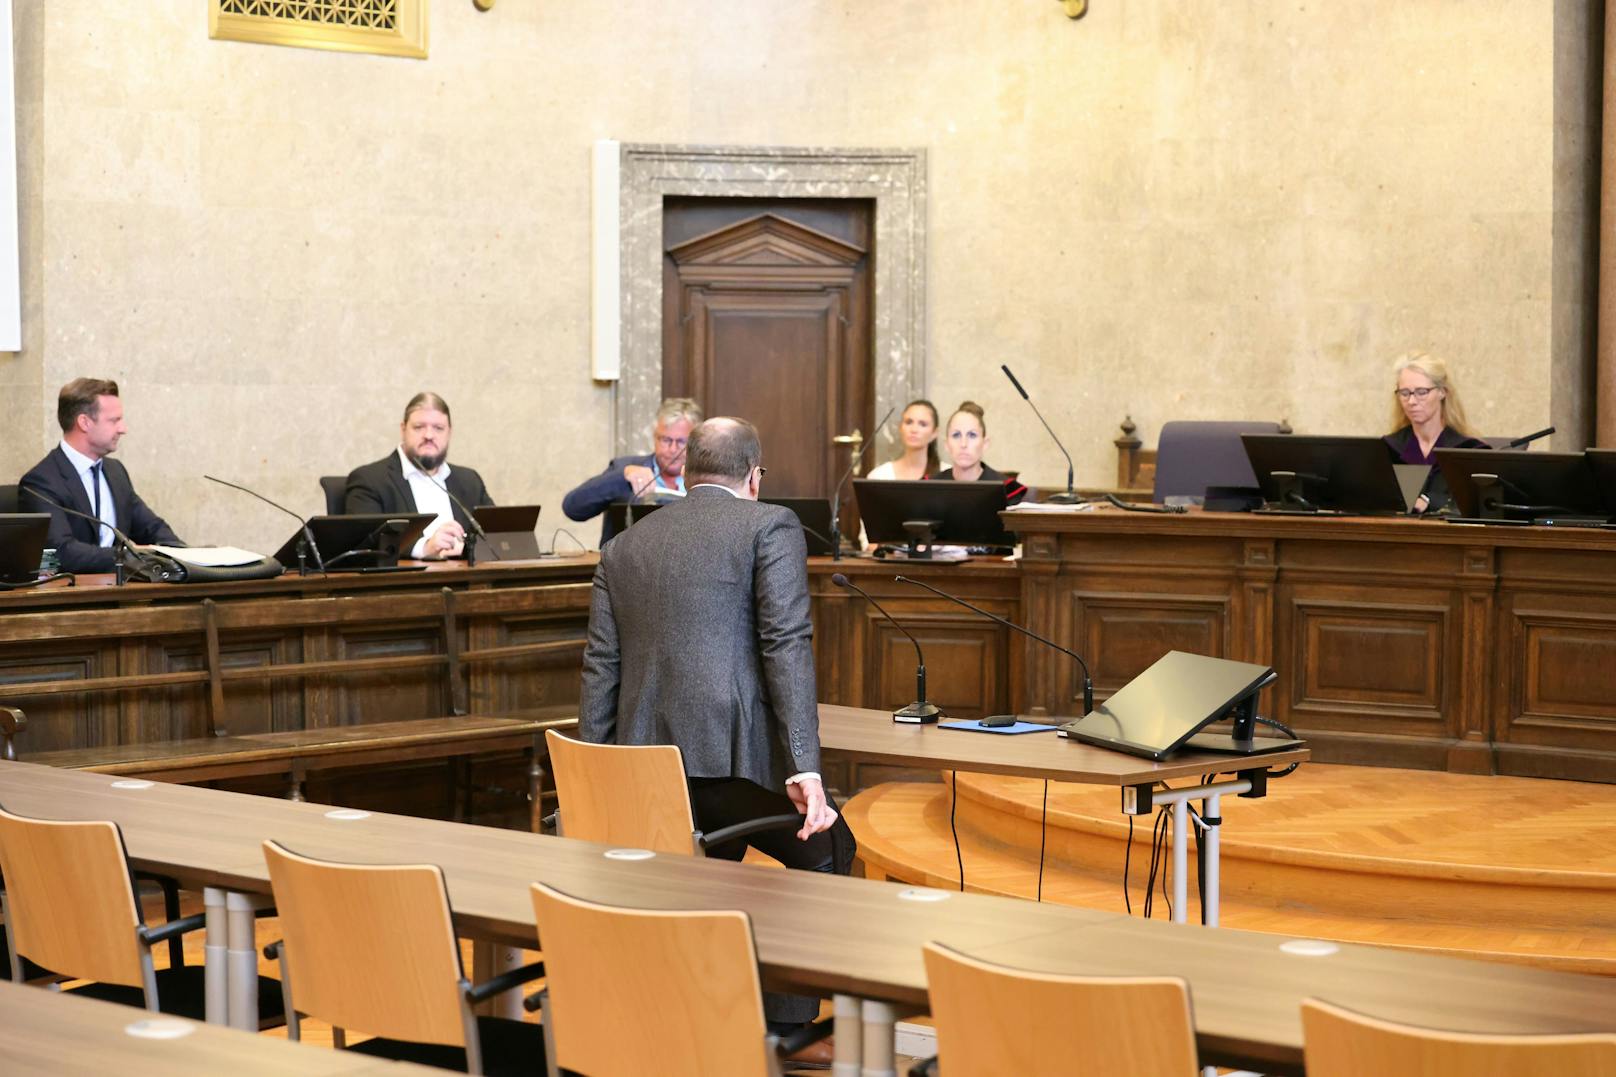 Es gibt nichts zu beschönigen", meinte der Verteidiger von Florian Teichtmeister bei seinem Schlussplädoyer vor der Urteilsverkündung.